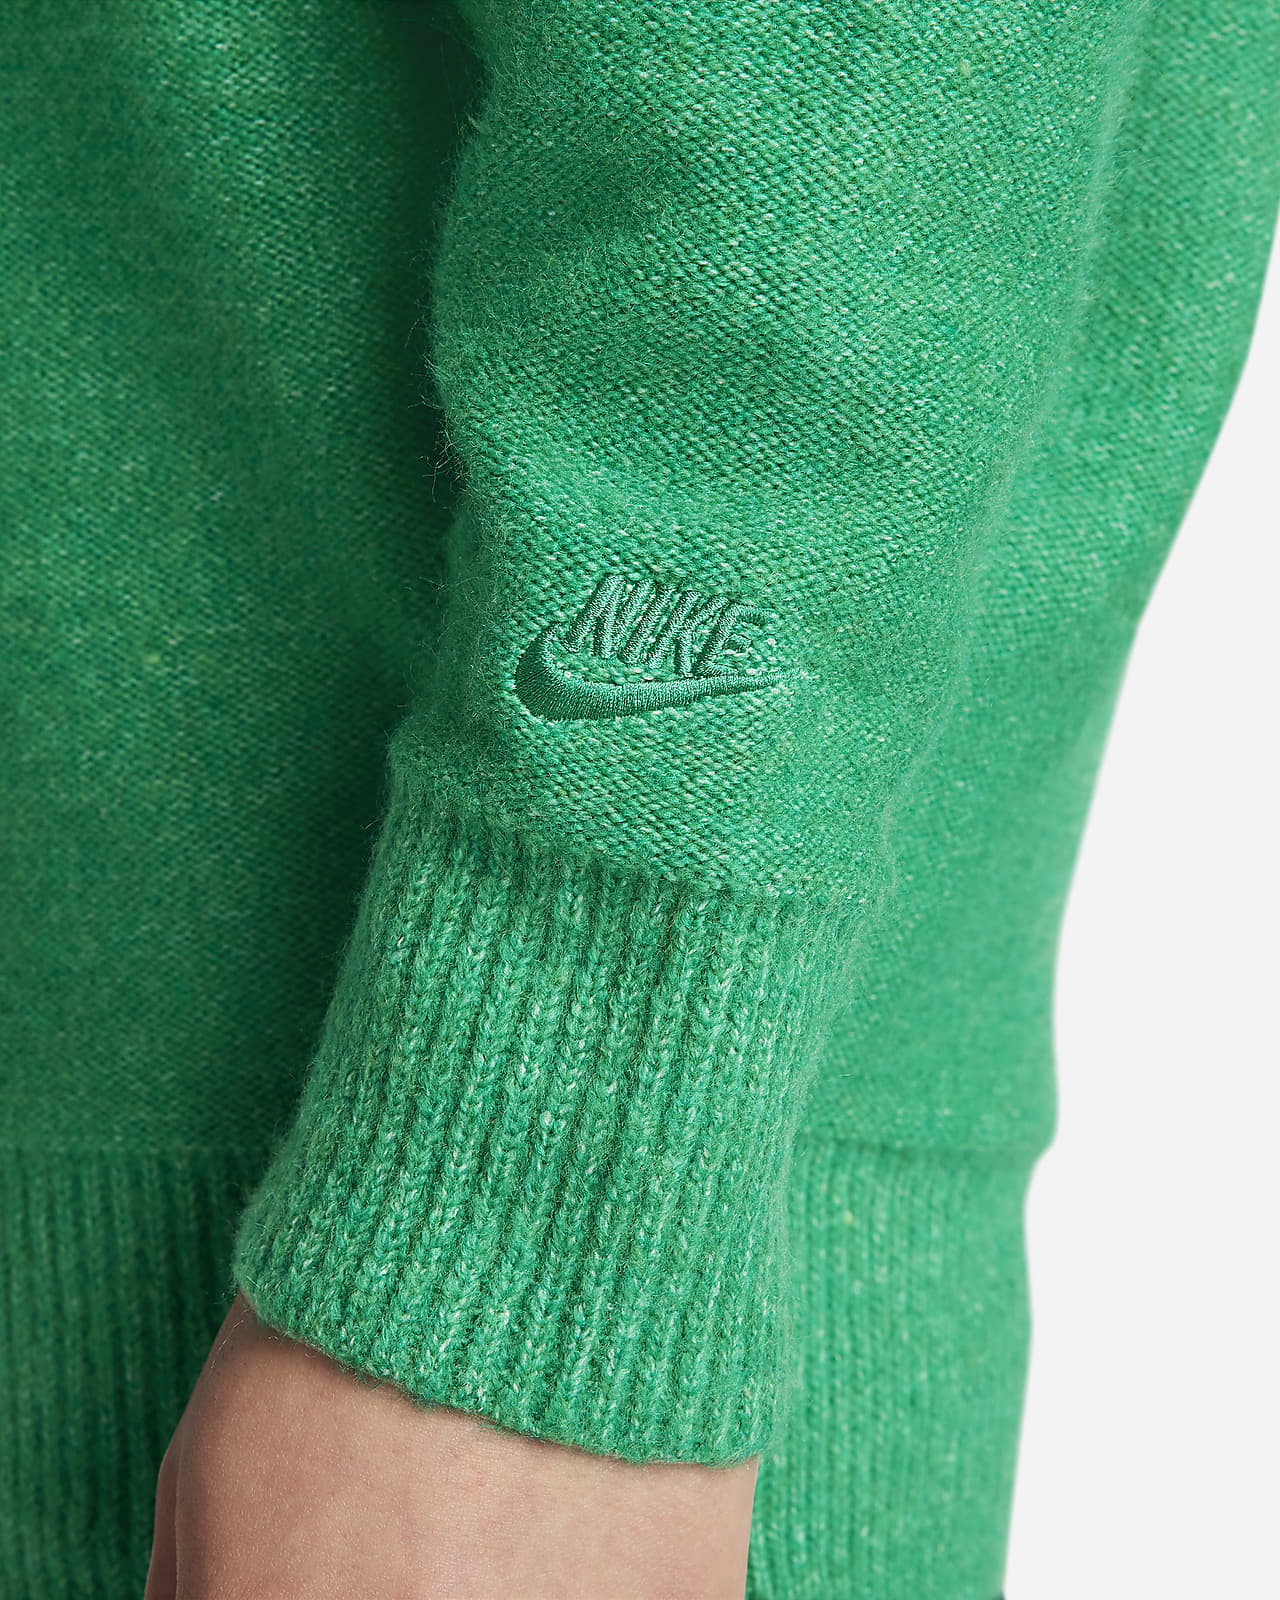 Nike Sportswear Tech Pack Men's Engineered Knit Short-Sleeve Sweater.